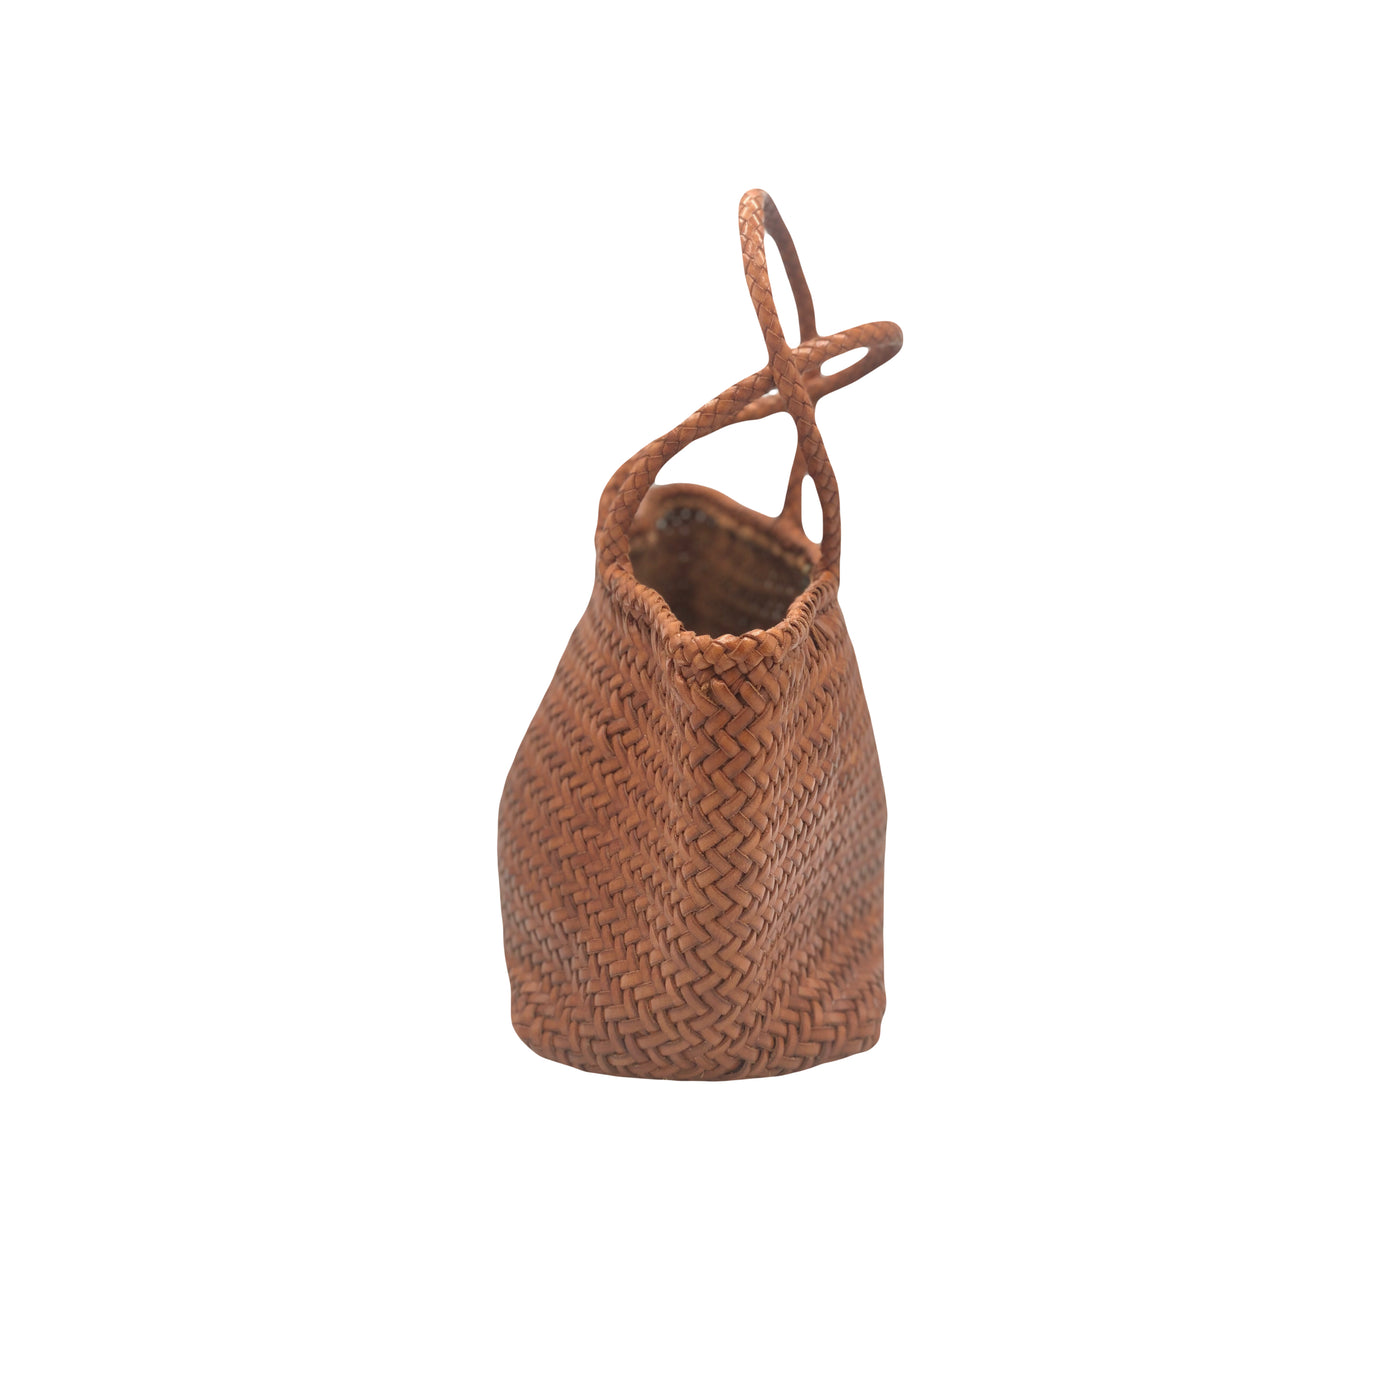 DRAGON Diffusion Small Tan basket RRP: £284